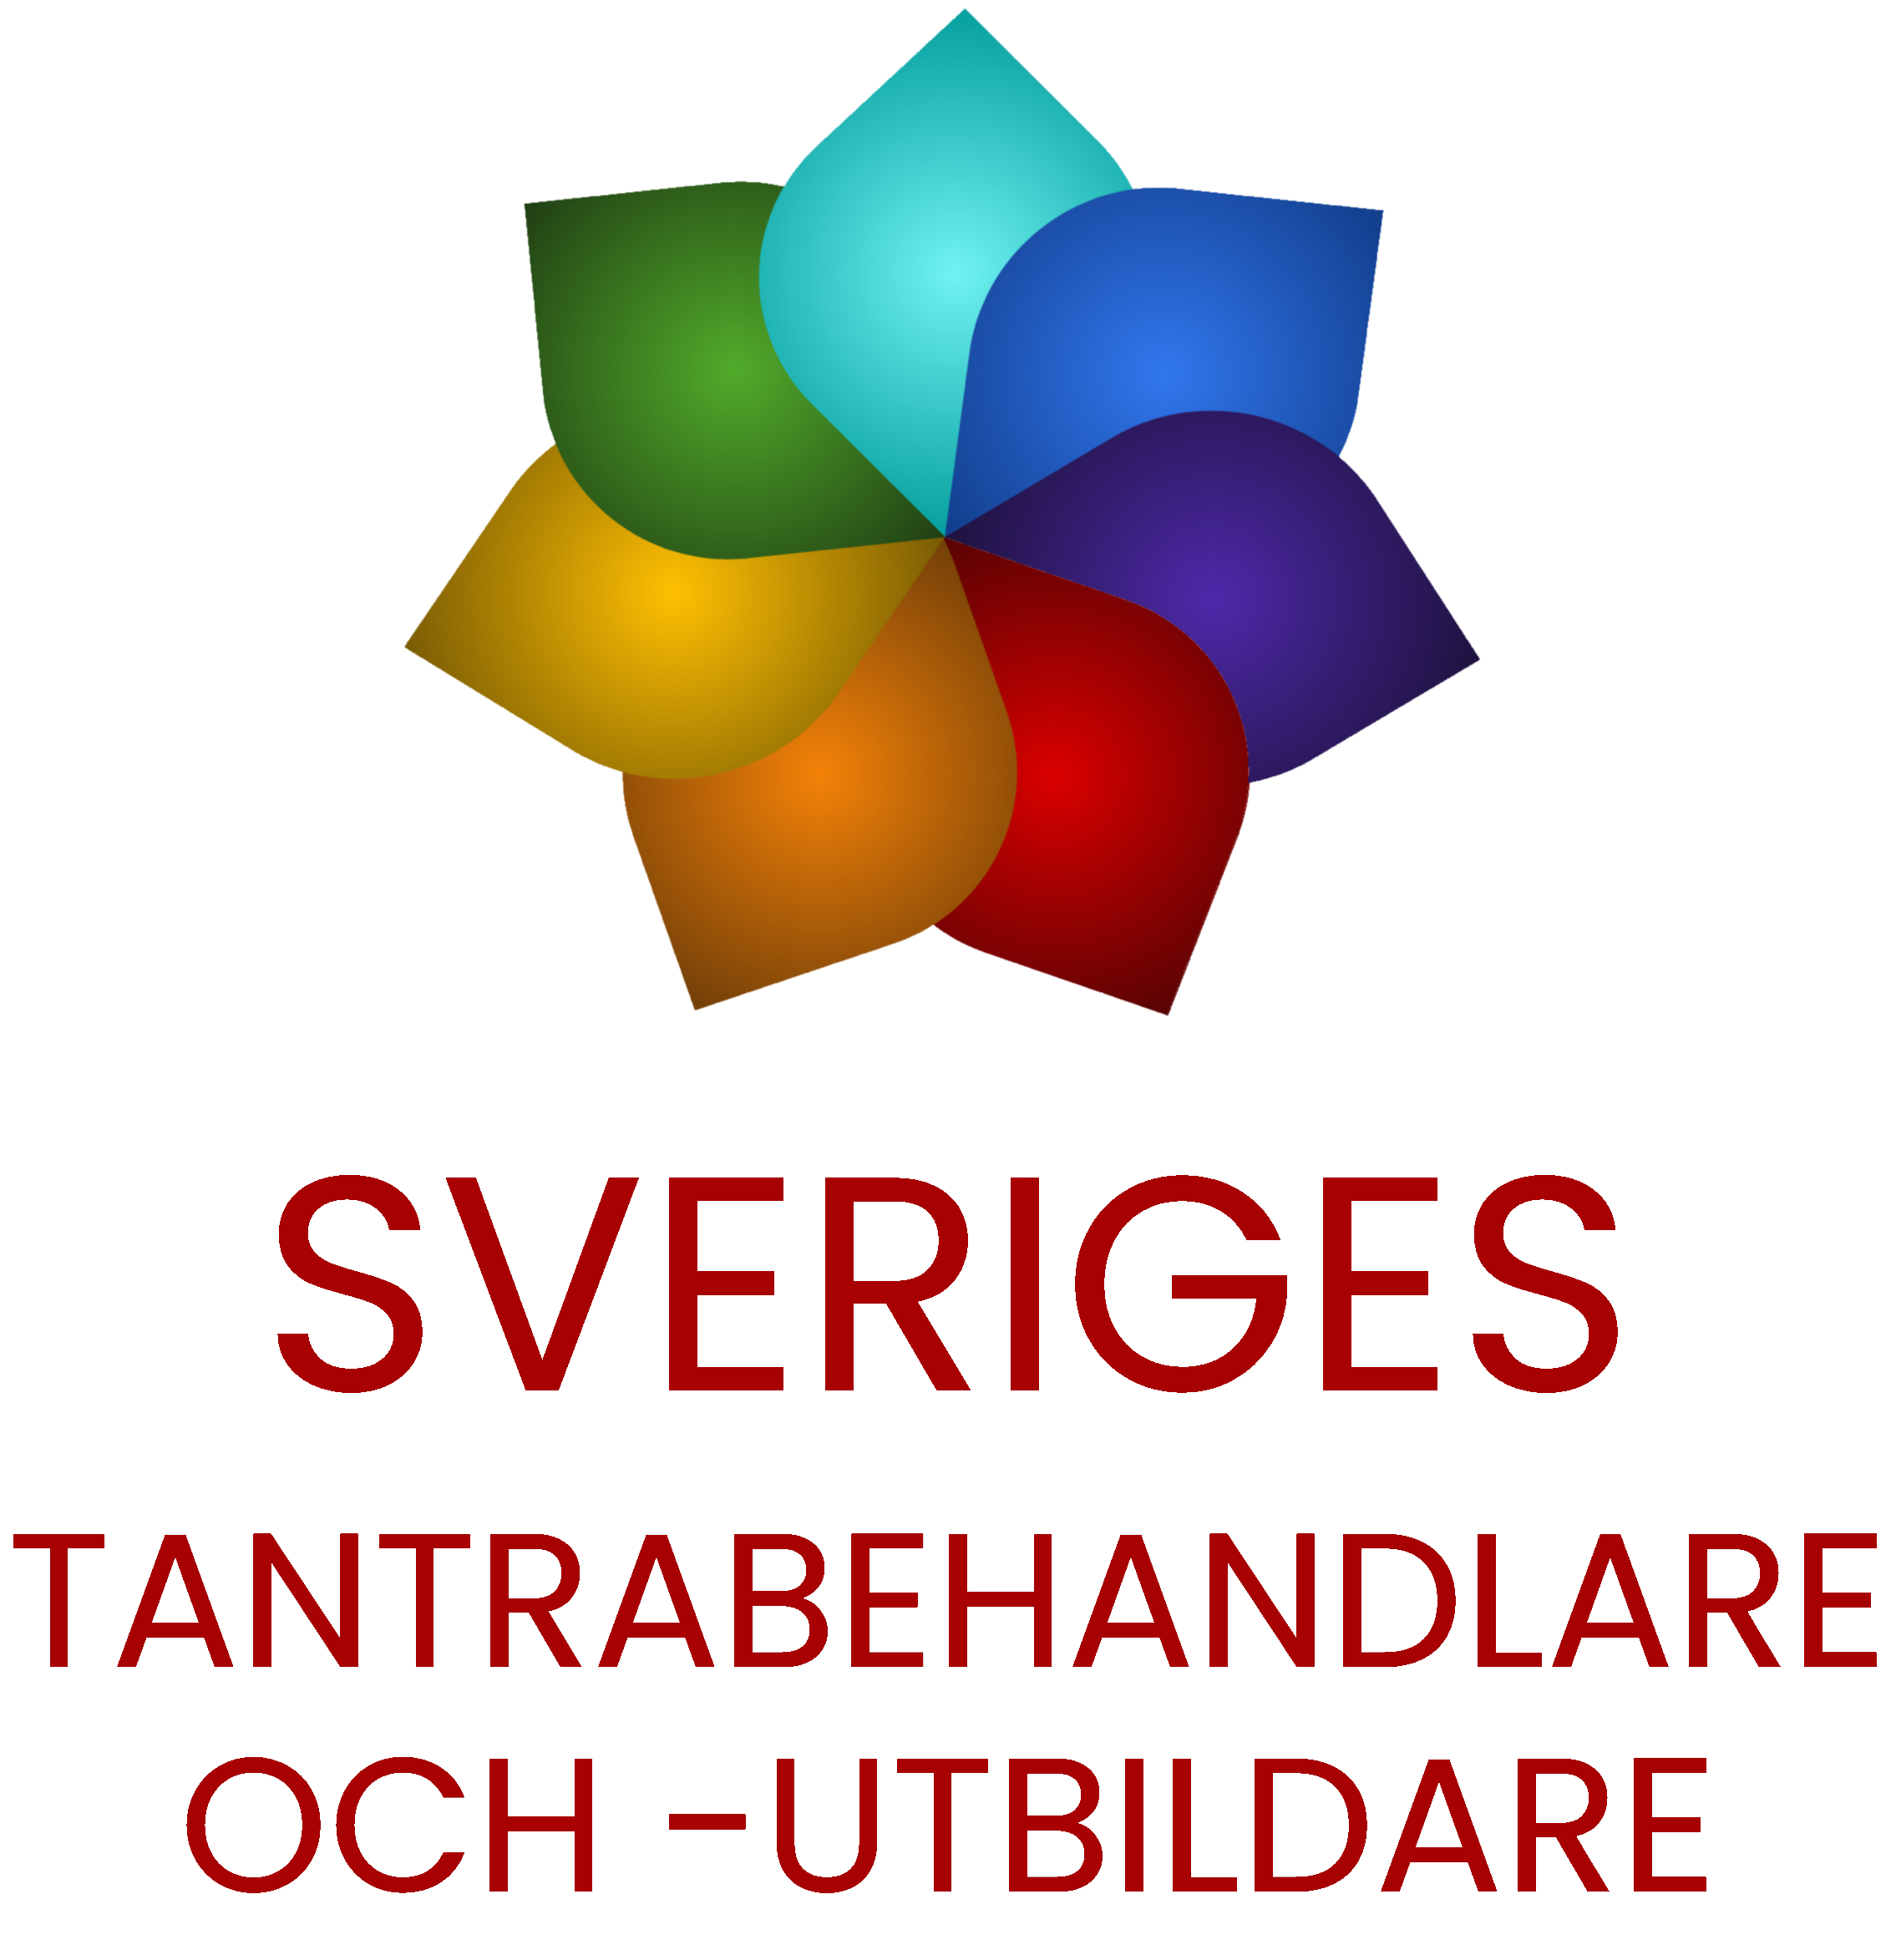 Medlem i Sveriges tantrabehandlare och -utbildare